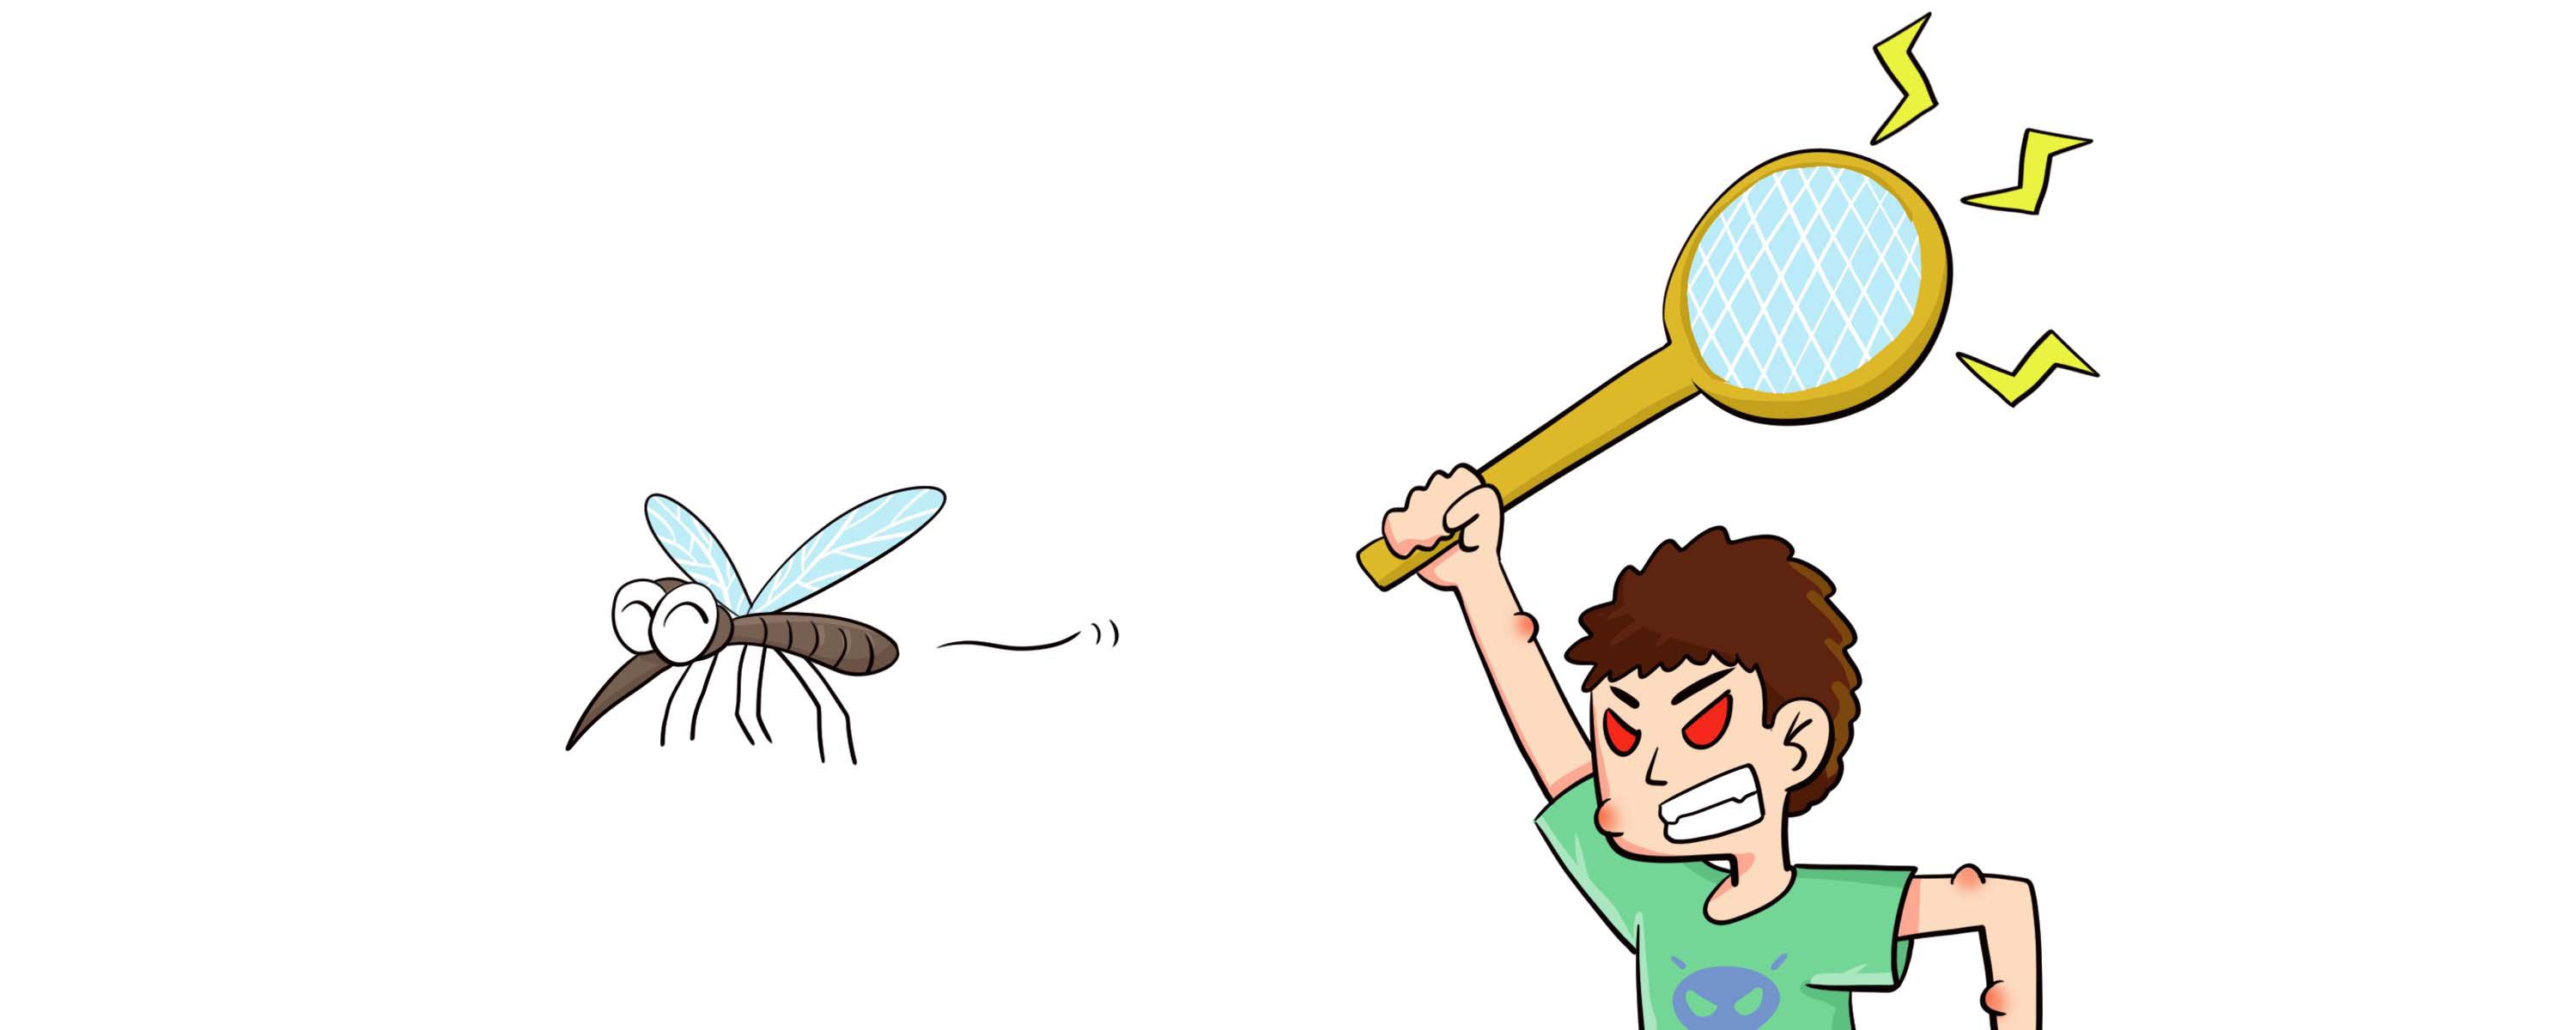 电蚊拍上的灯可以吸引蚊子吗 带灯电蚊拍有用吗